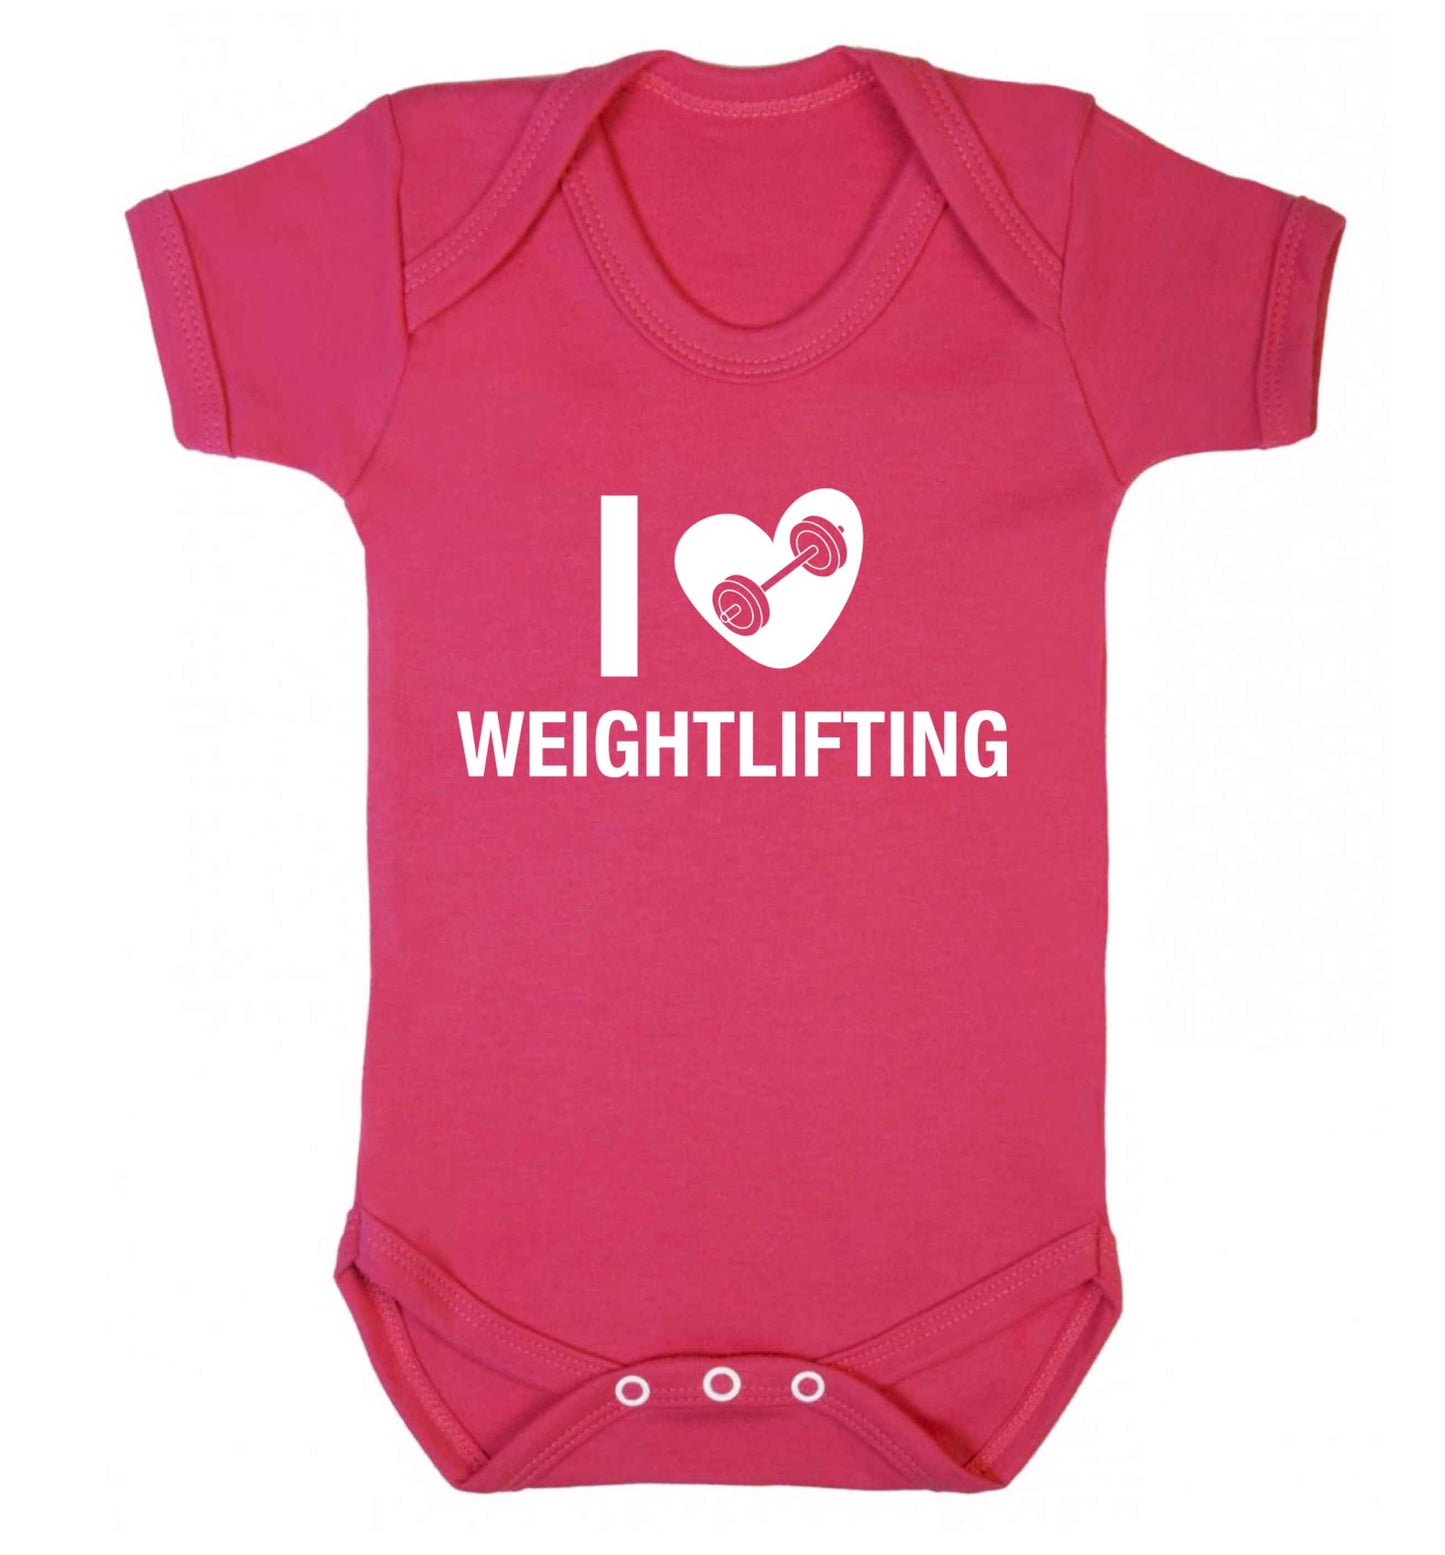 I love weightlifting Baby Vest dark pink 18-24 months